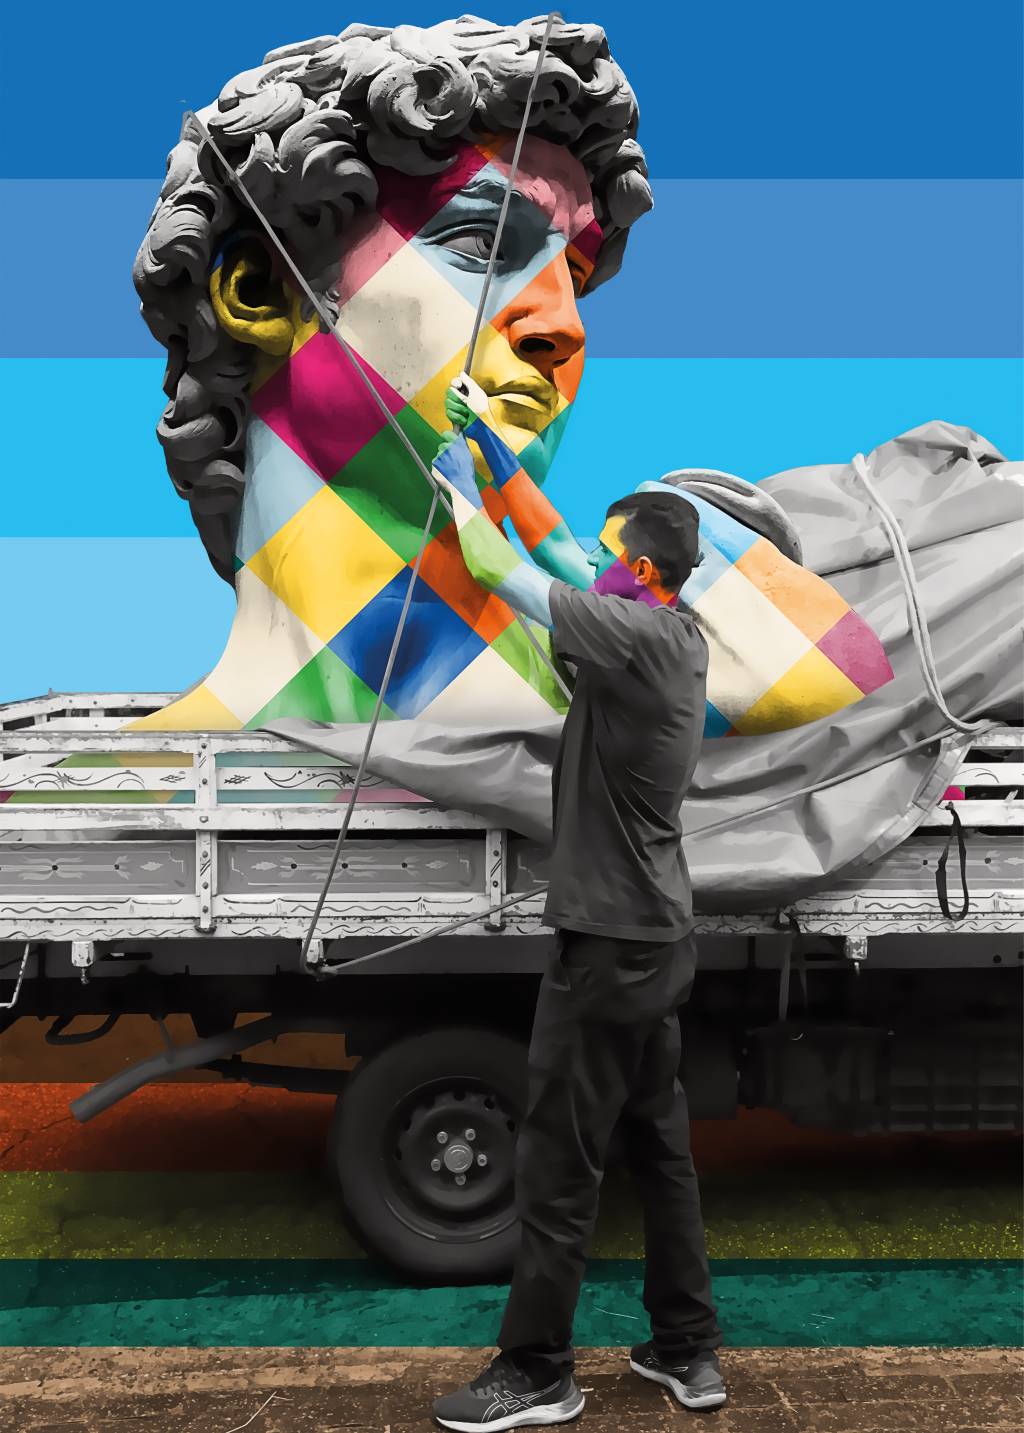 Obra especial de Kobra para 8ª edição da Exposição da Paulista. Foto exibe caminhoneiro mexendo em traços de Davi colorido em um caminhão.